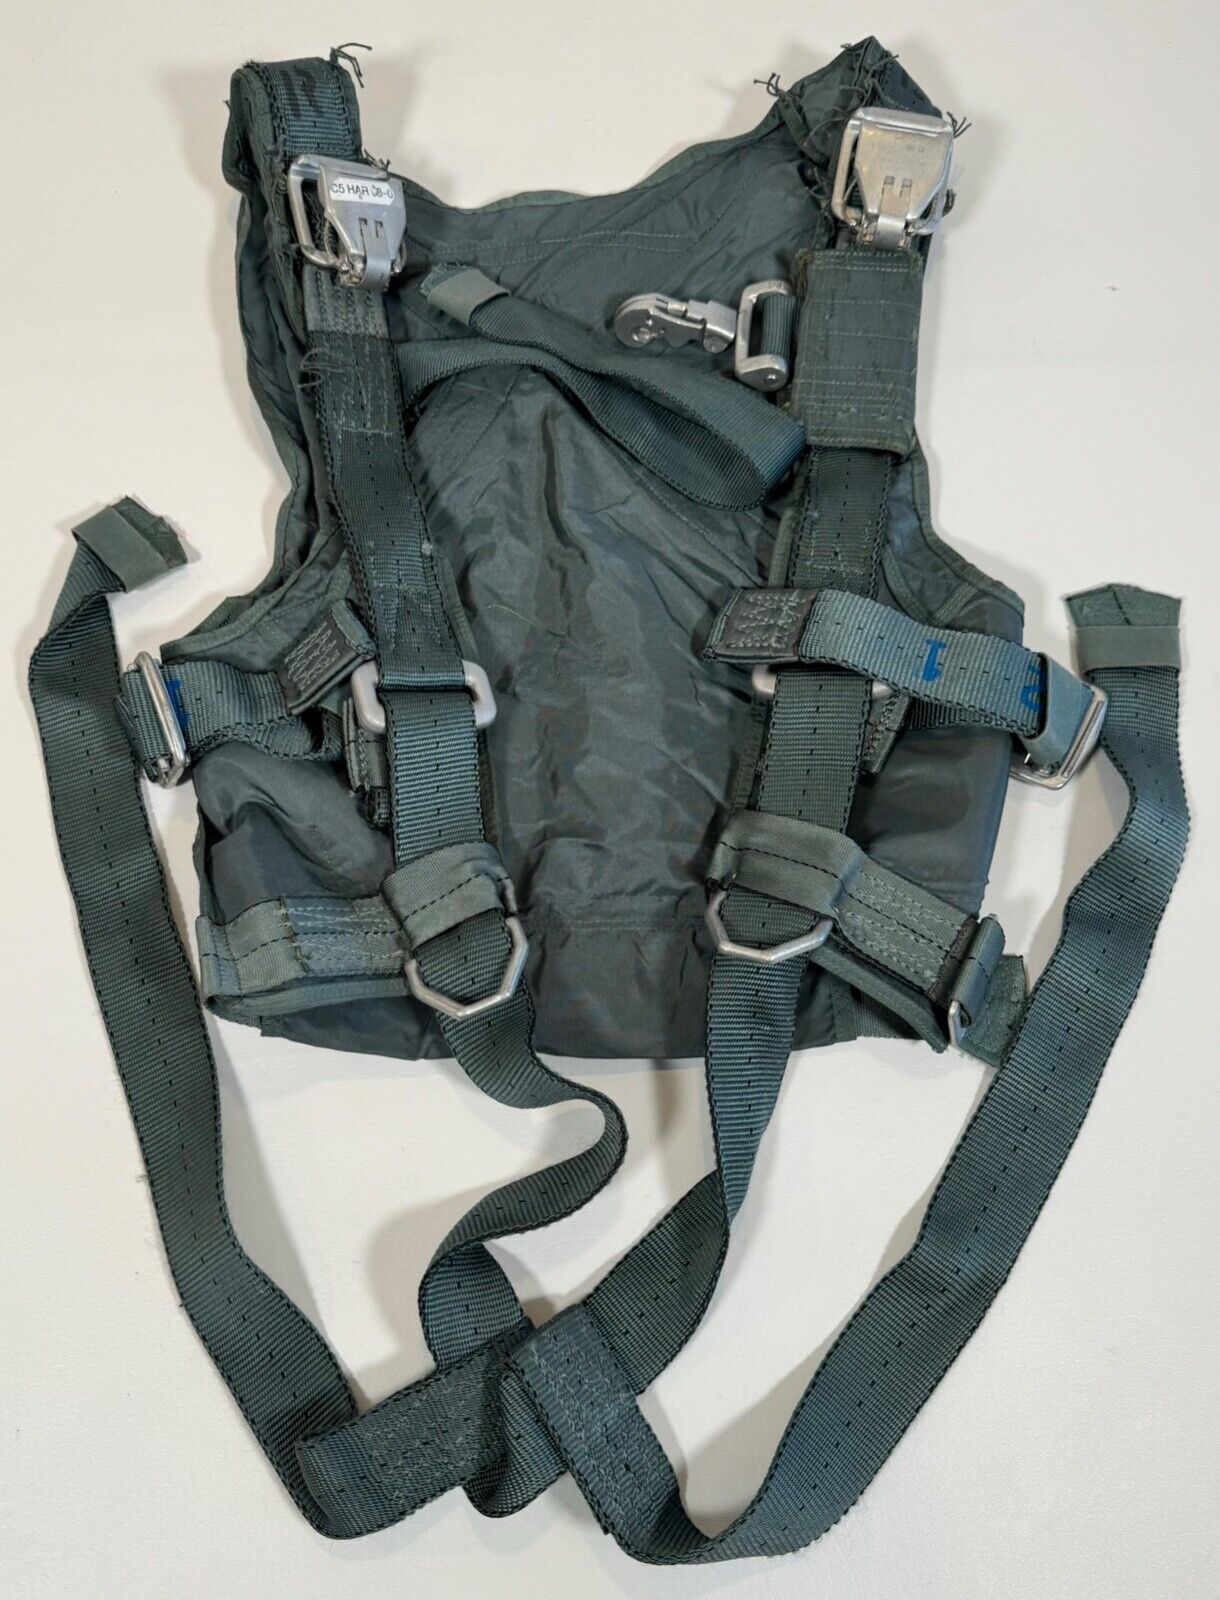 USAF Air Force Pilot Parachute Personnel Chest Harness PCU-17/P